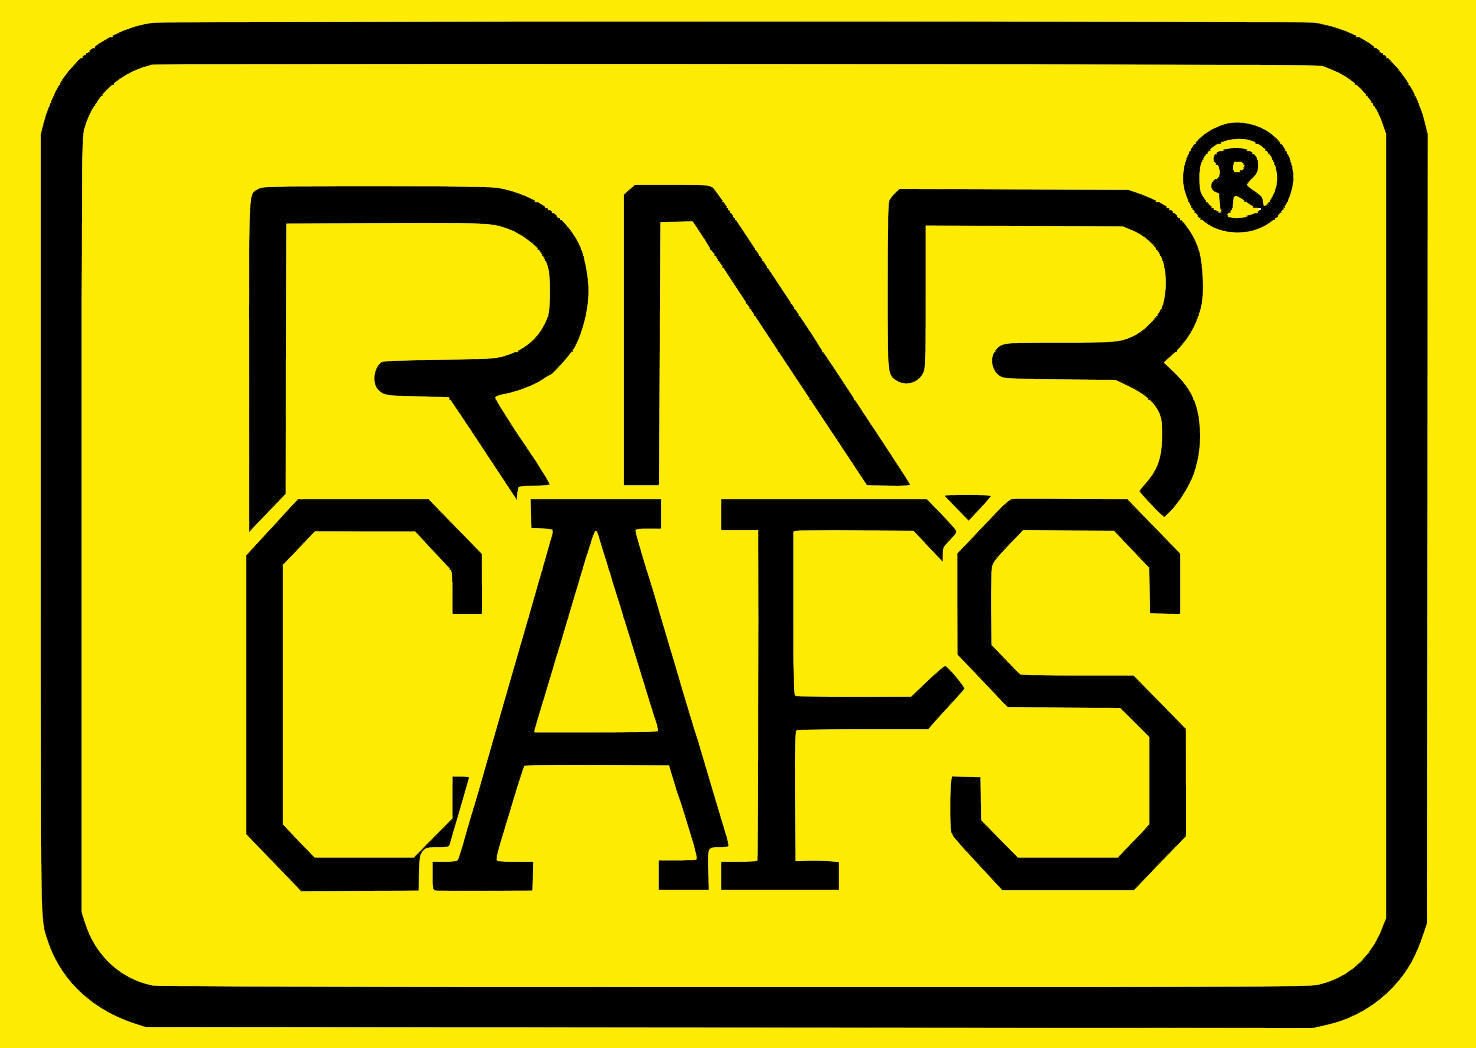 RNB CAPS